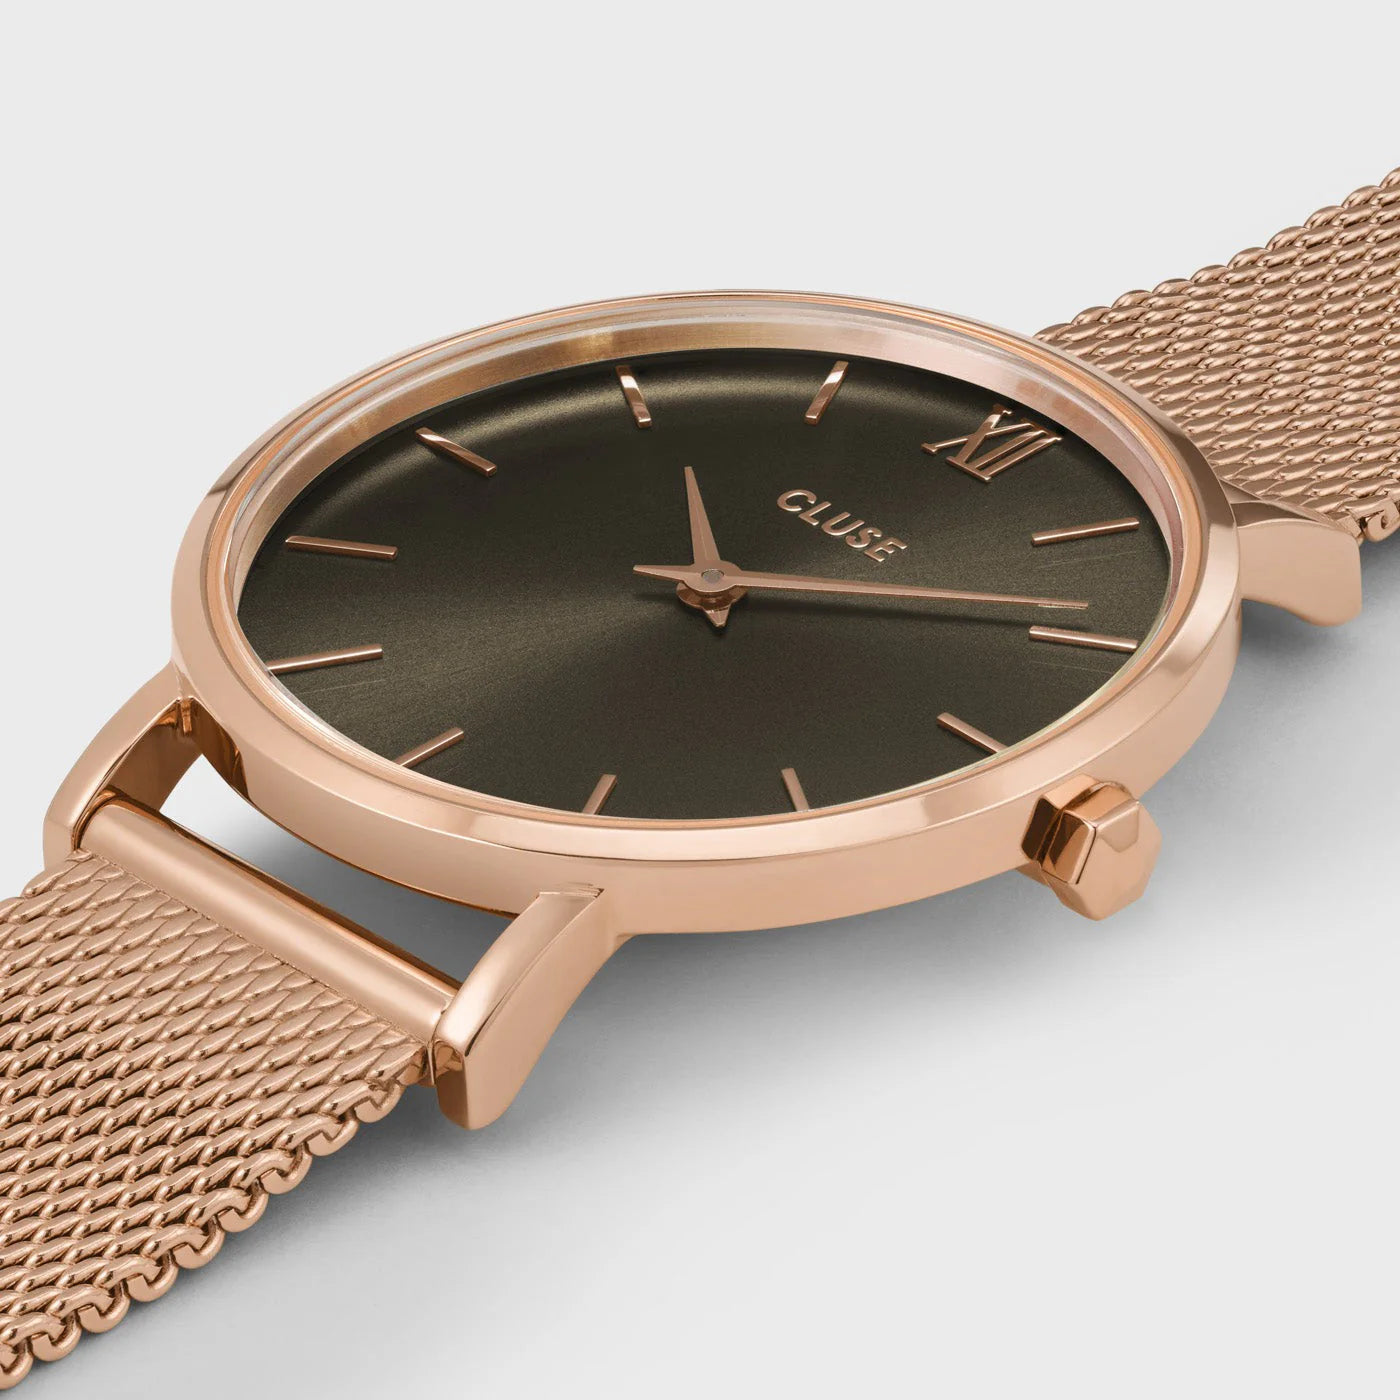 Detailansicht der Cluse Stahl-Uhr "Minuit Mesh" in roségoldener Farbe mit einem grau-braunen Zifferblatt